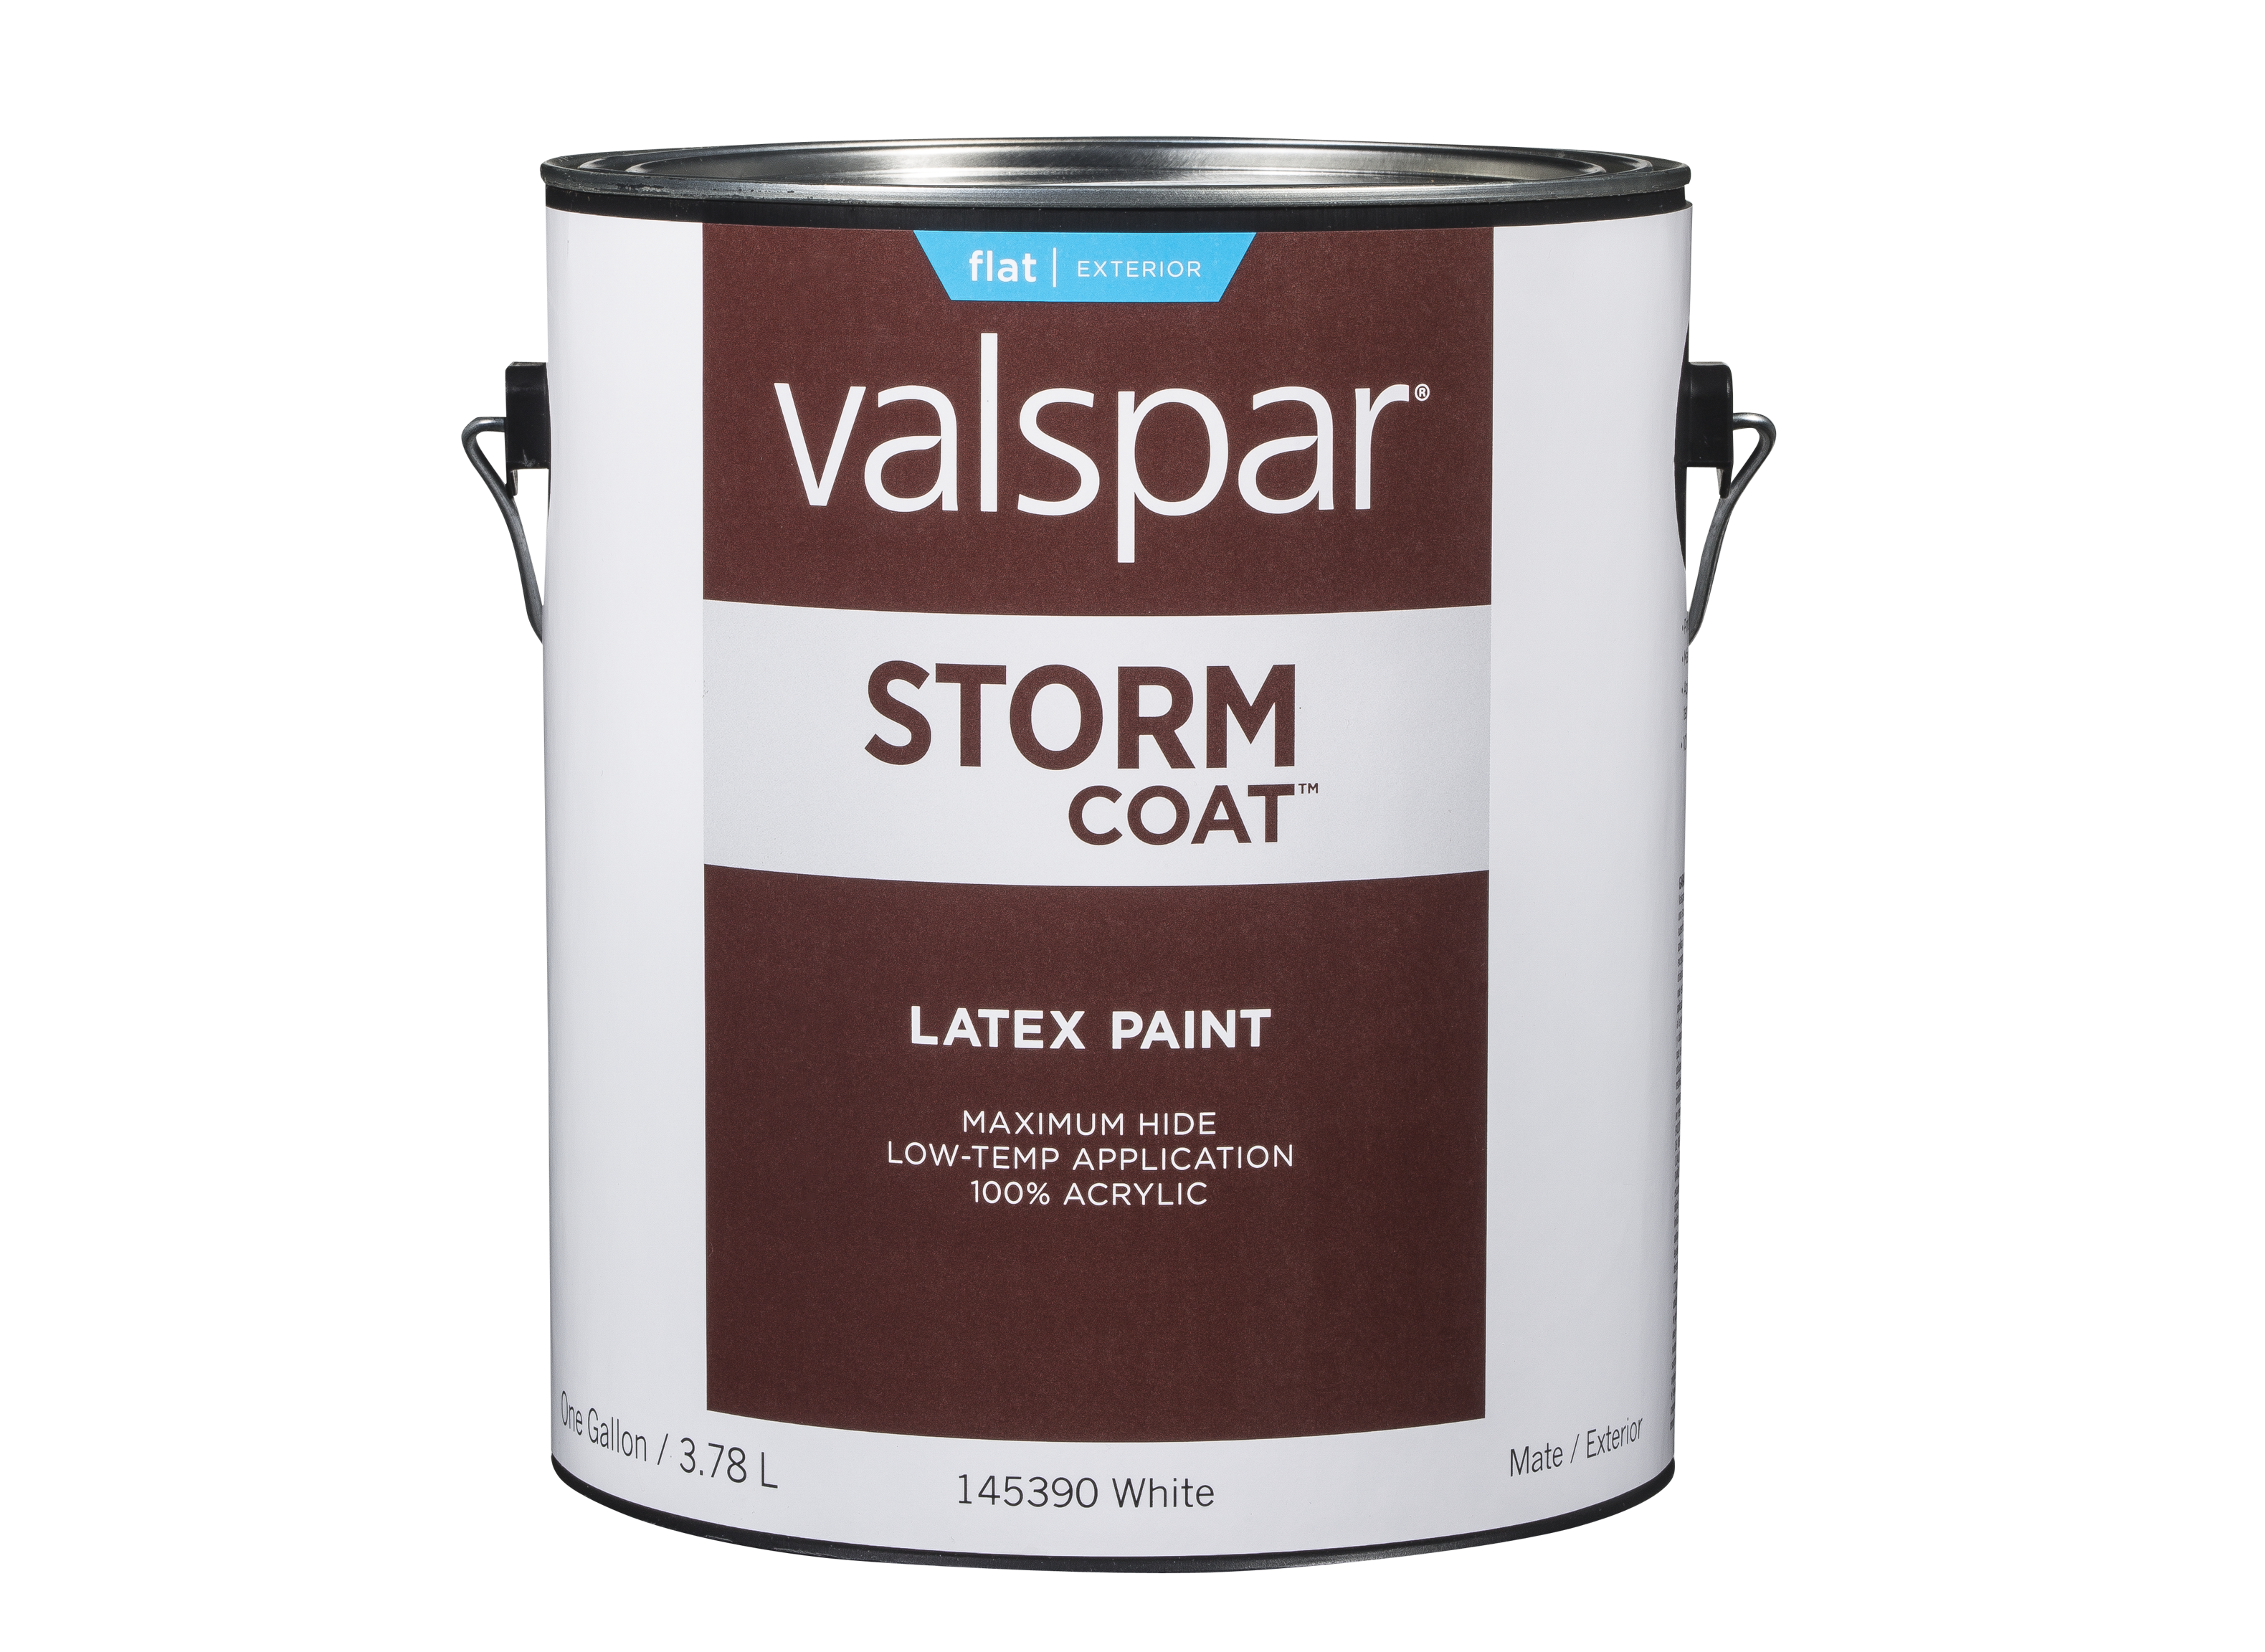 Valspar Storm Coat (Lowe's) Paint Review - Consumer Reports